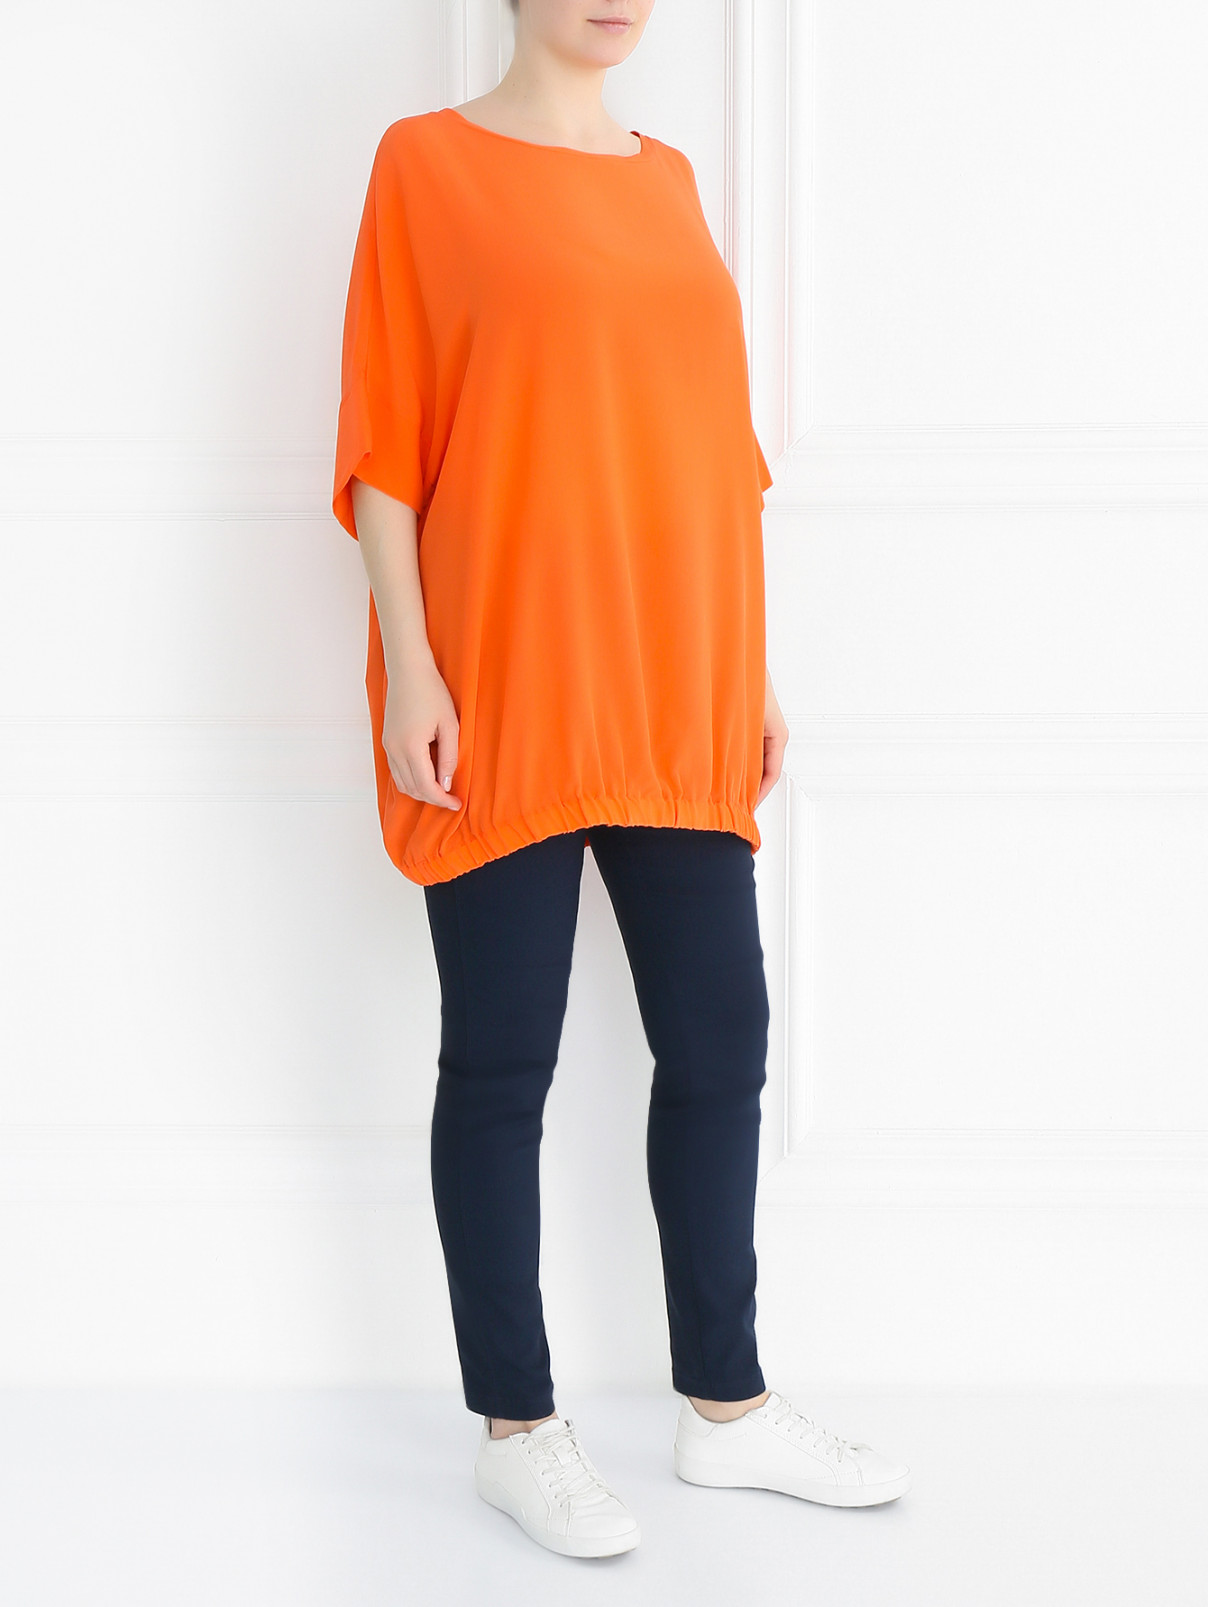 Блуза свободного кроя из шелка Voyage by Marina Rinaldi  –  Модель Общий вид  – Цвет:  Оранжевый